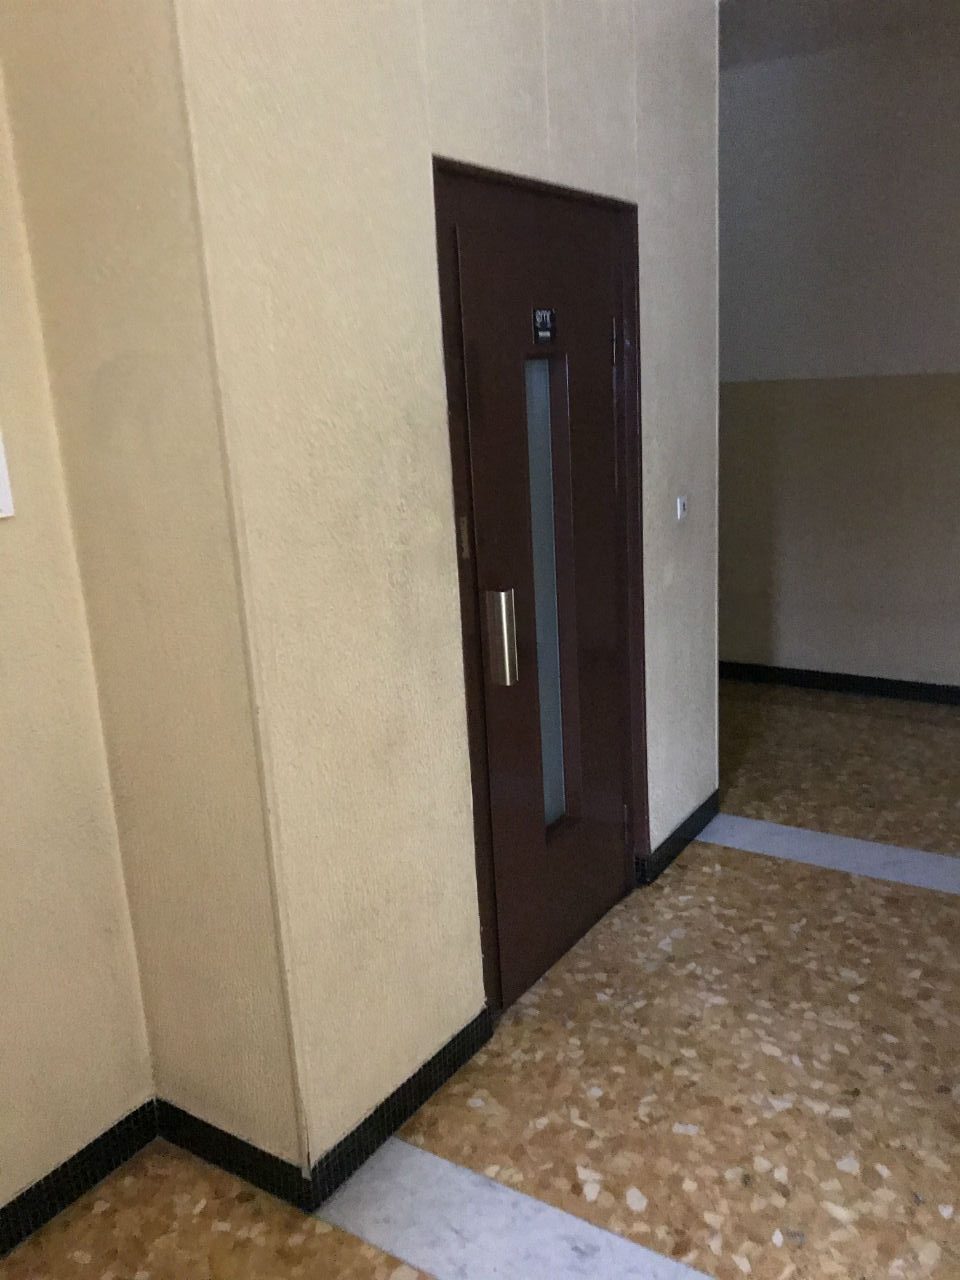 Les contraintes d’un immeuble sans ascenseur